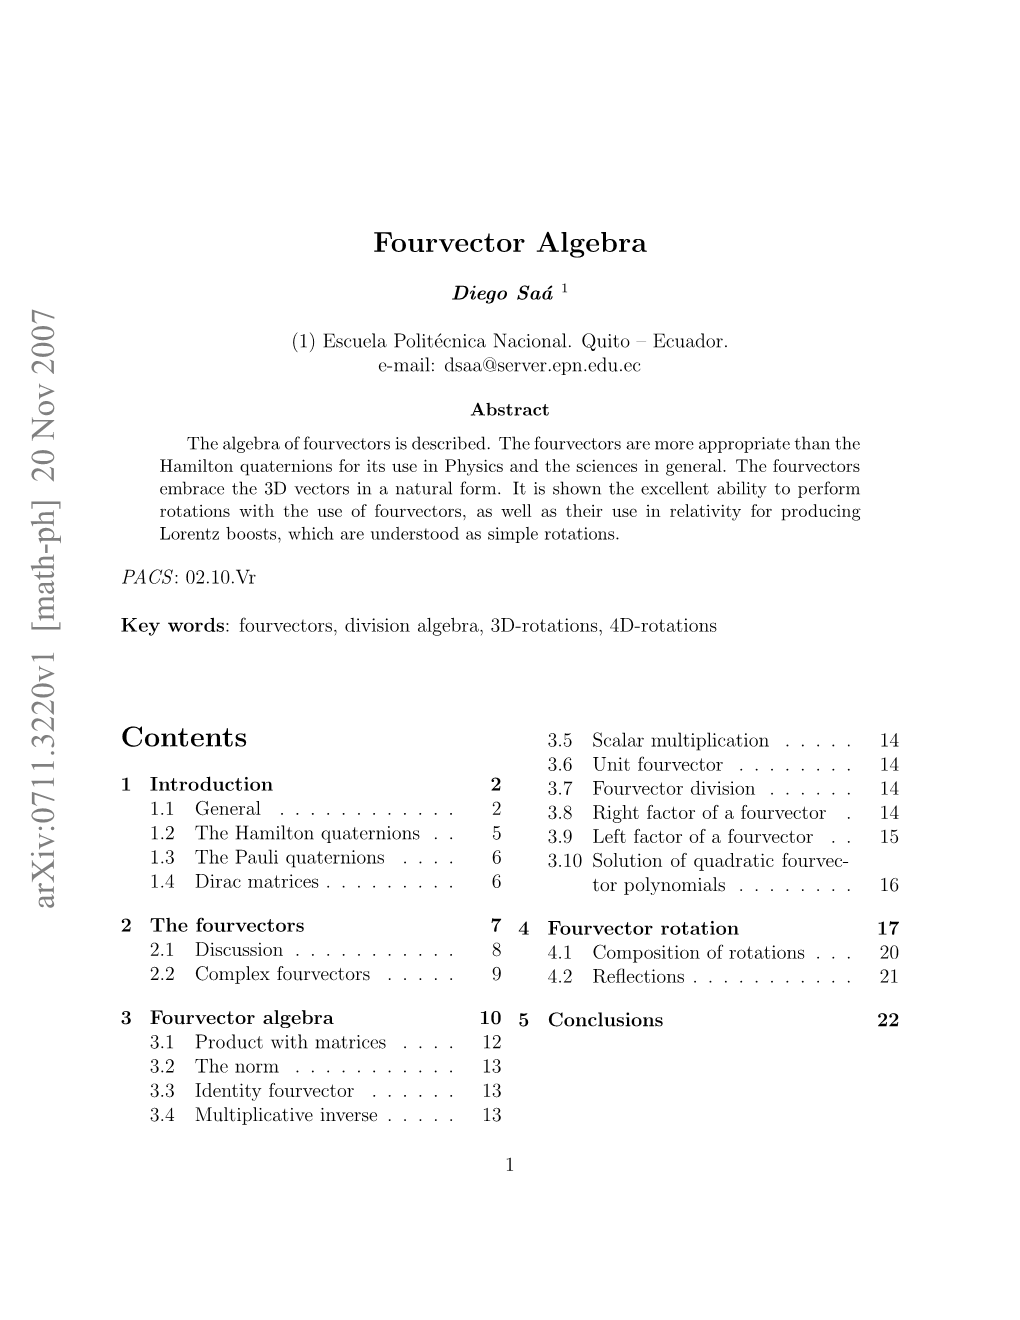 Fourvector Algebra Control [28]